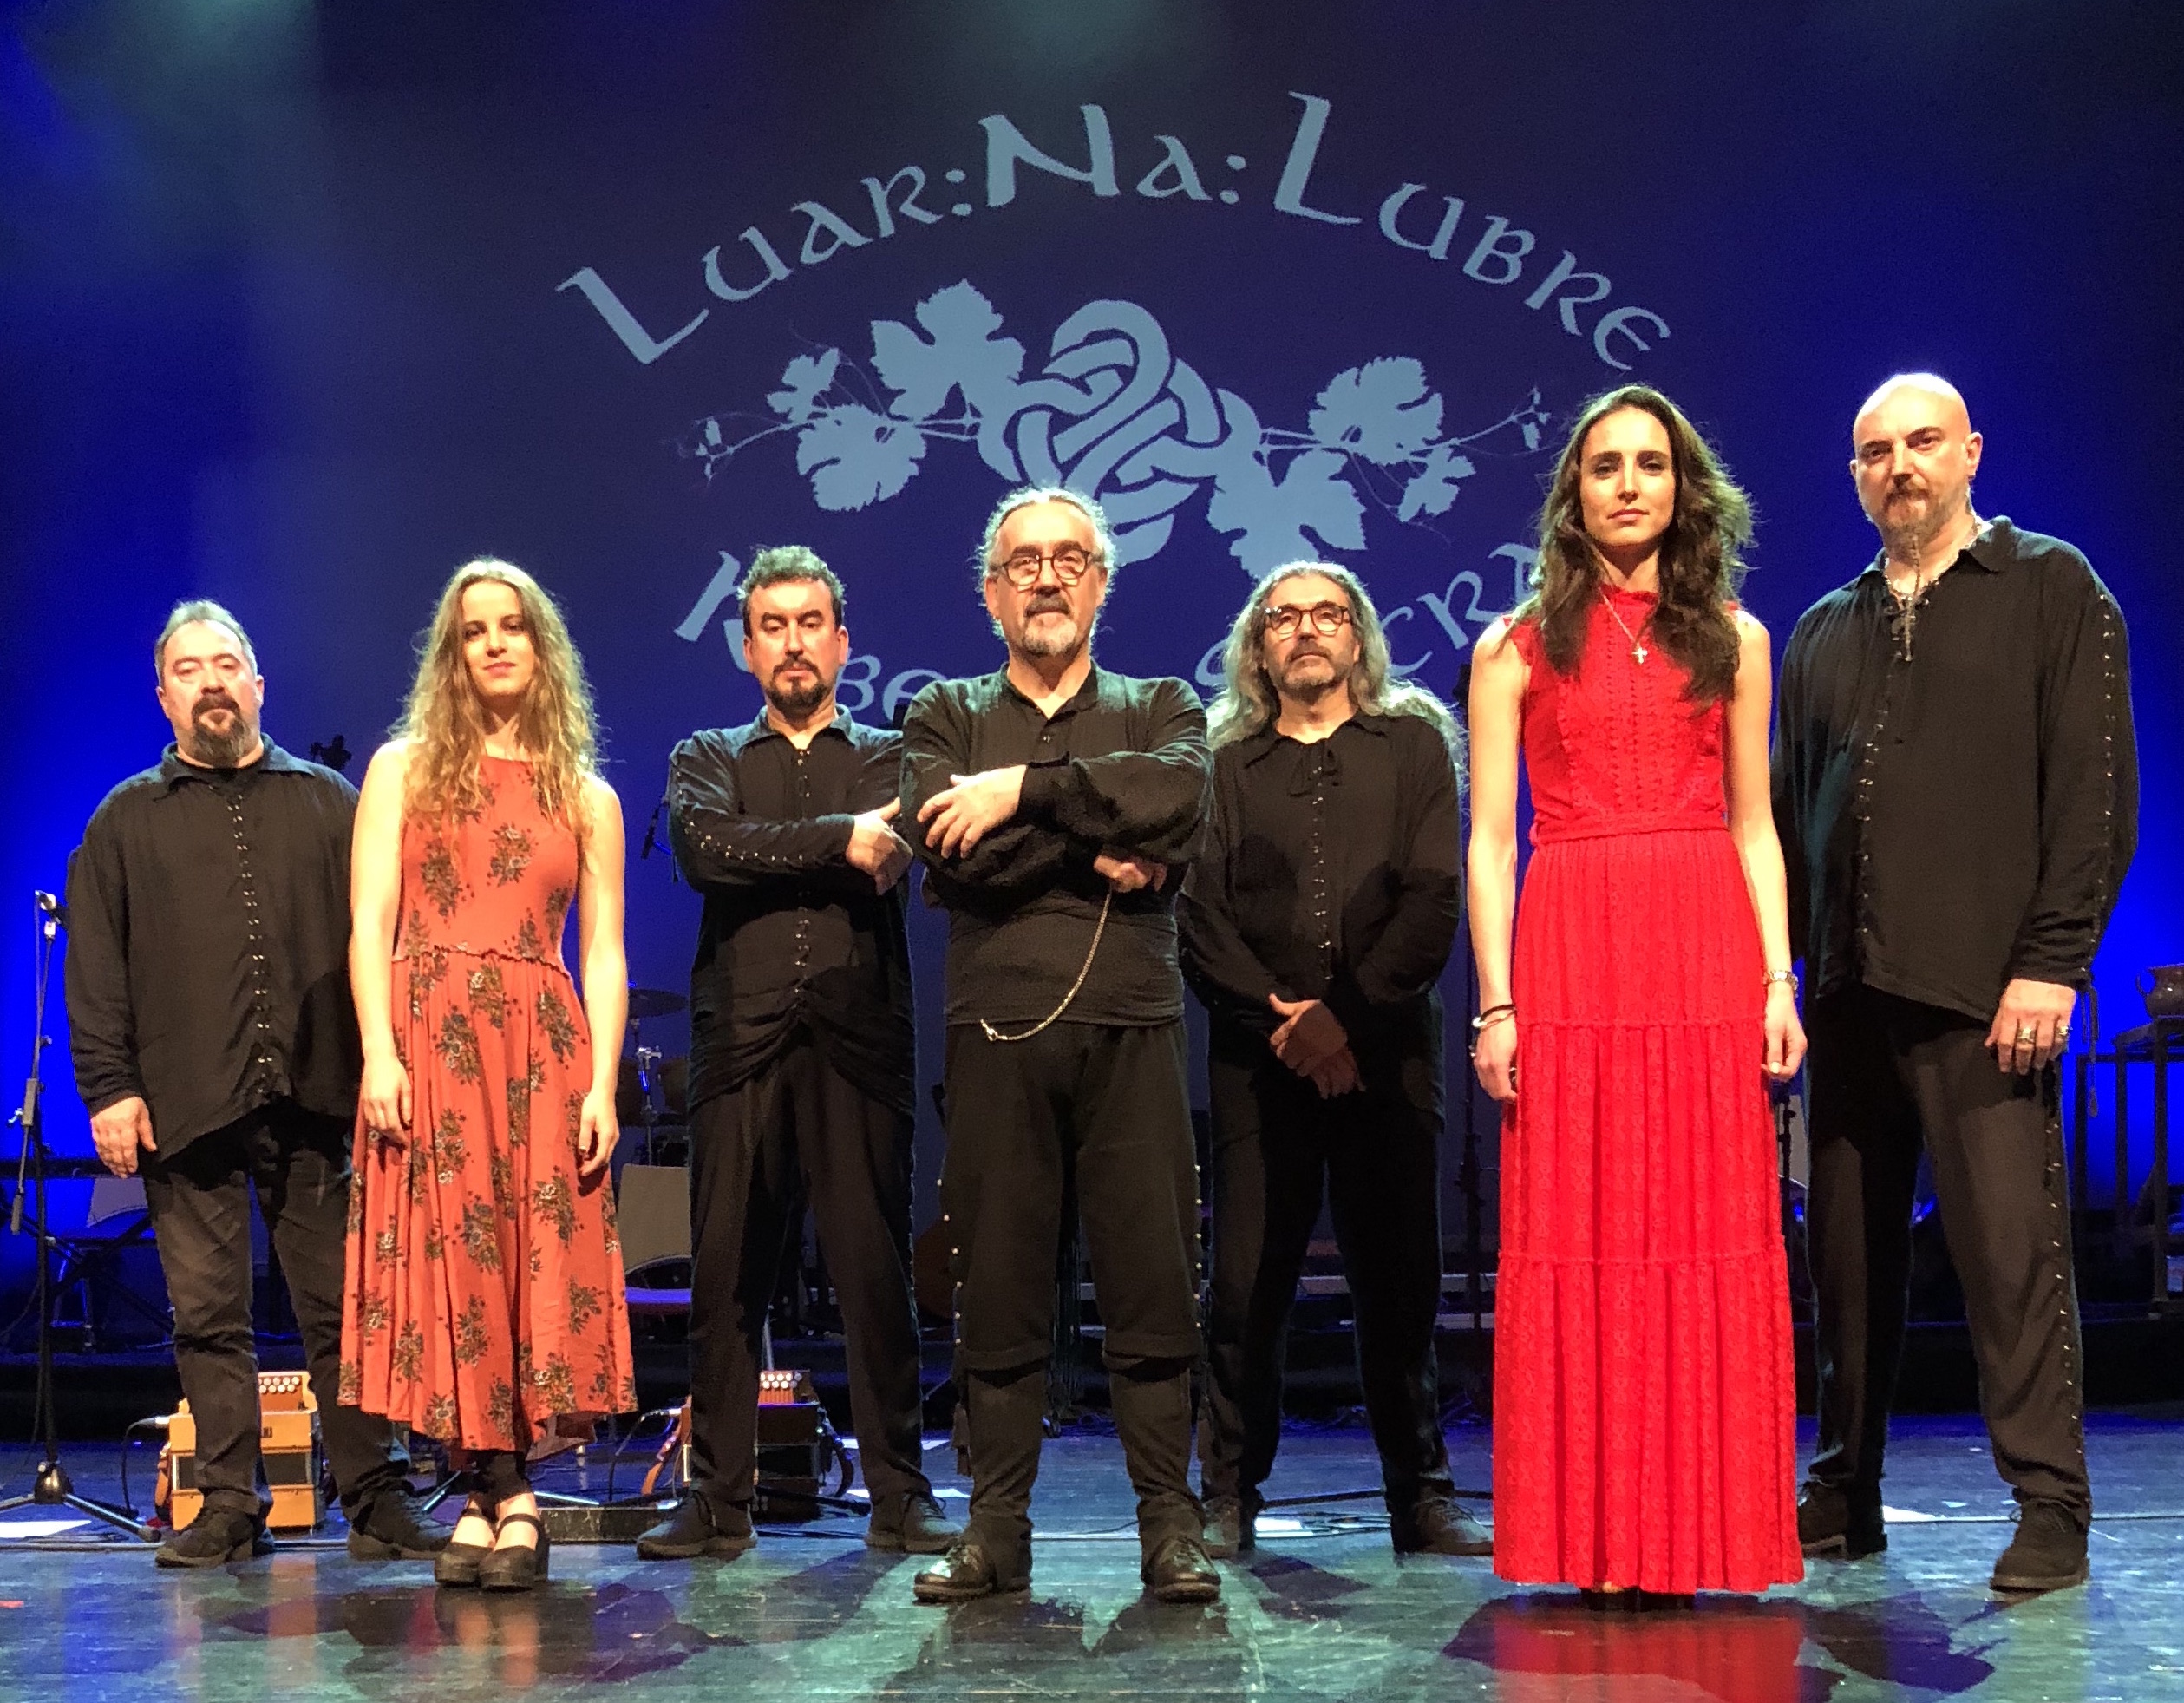 Luar Na Lubre, la mítica banda gallega del folk de Galicia, presentará en Adeje su último trabajo dedicado a la ‘Ribeira Sacra’